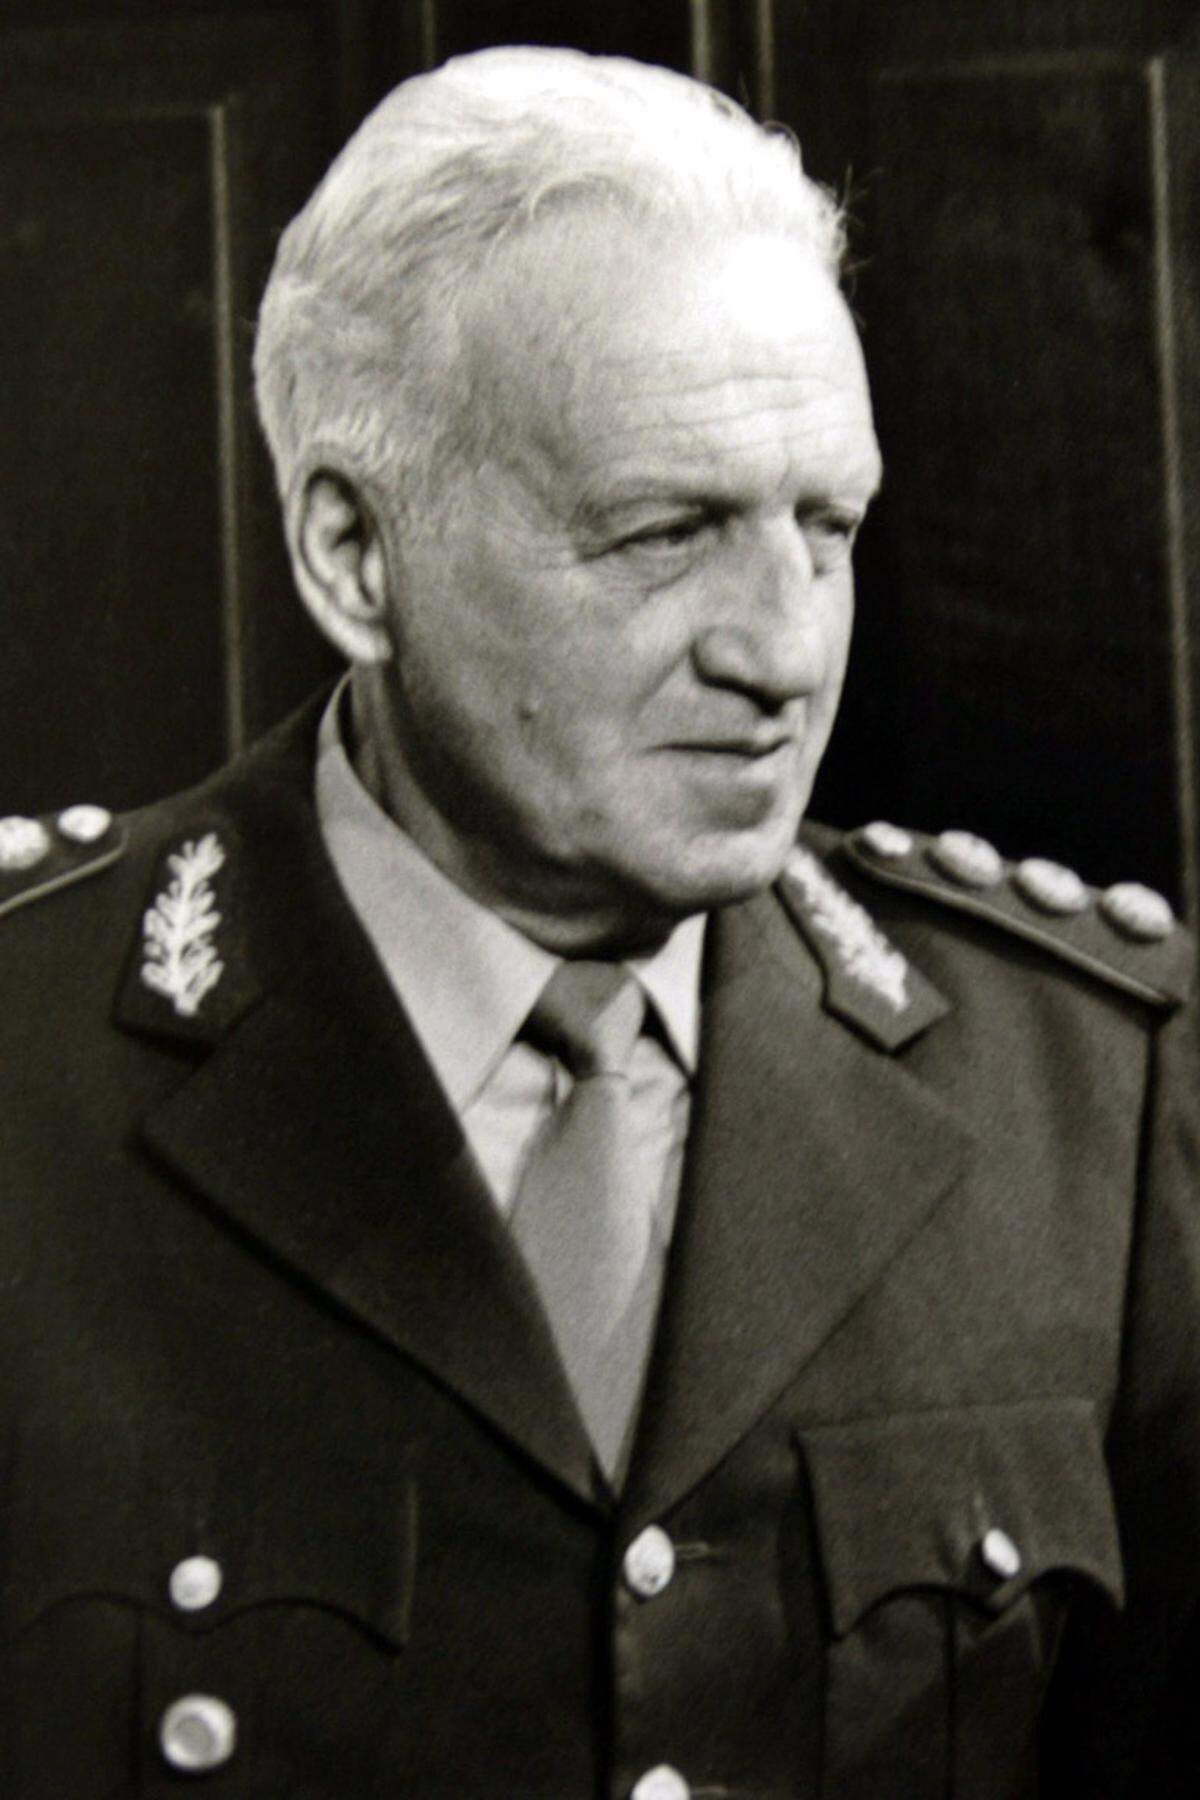 Über 140 Jahre später putschte sich in Argentinien das Militär an die Macht. Ende 1981 übernahm General Leopoldo Galtieri das Ruder und versprach seinen Landsleuten die baldige „Rückeroberung“ der Islas Malvinas, wie sie in Argentinien heißen.